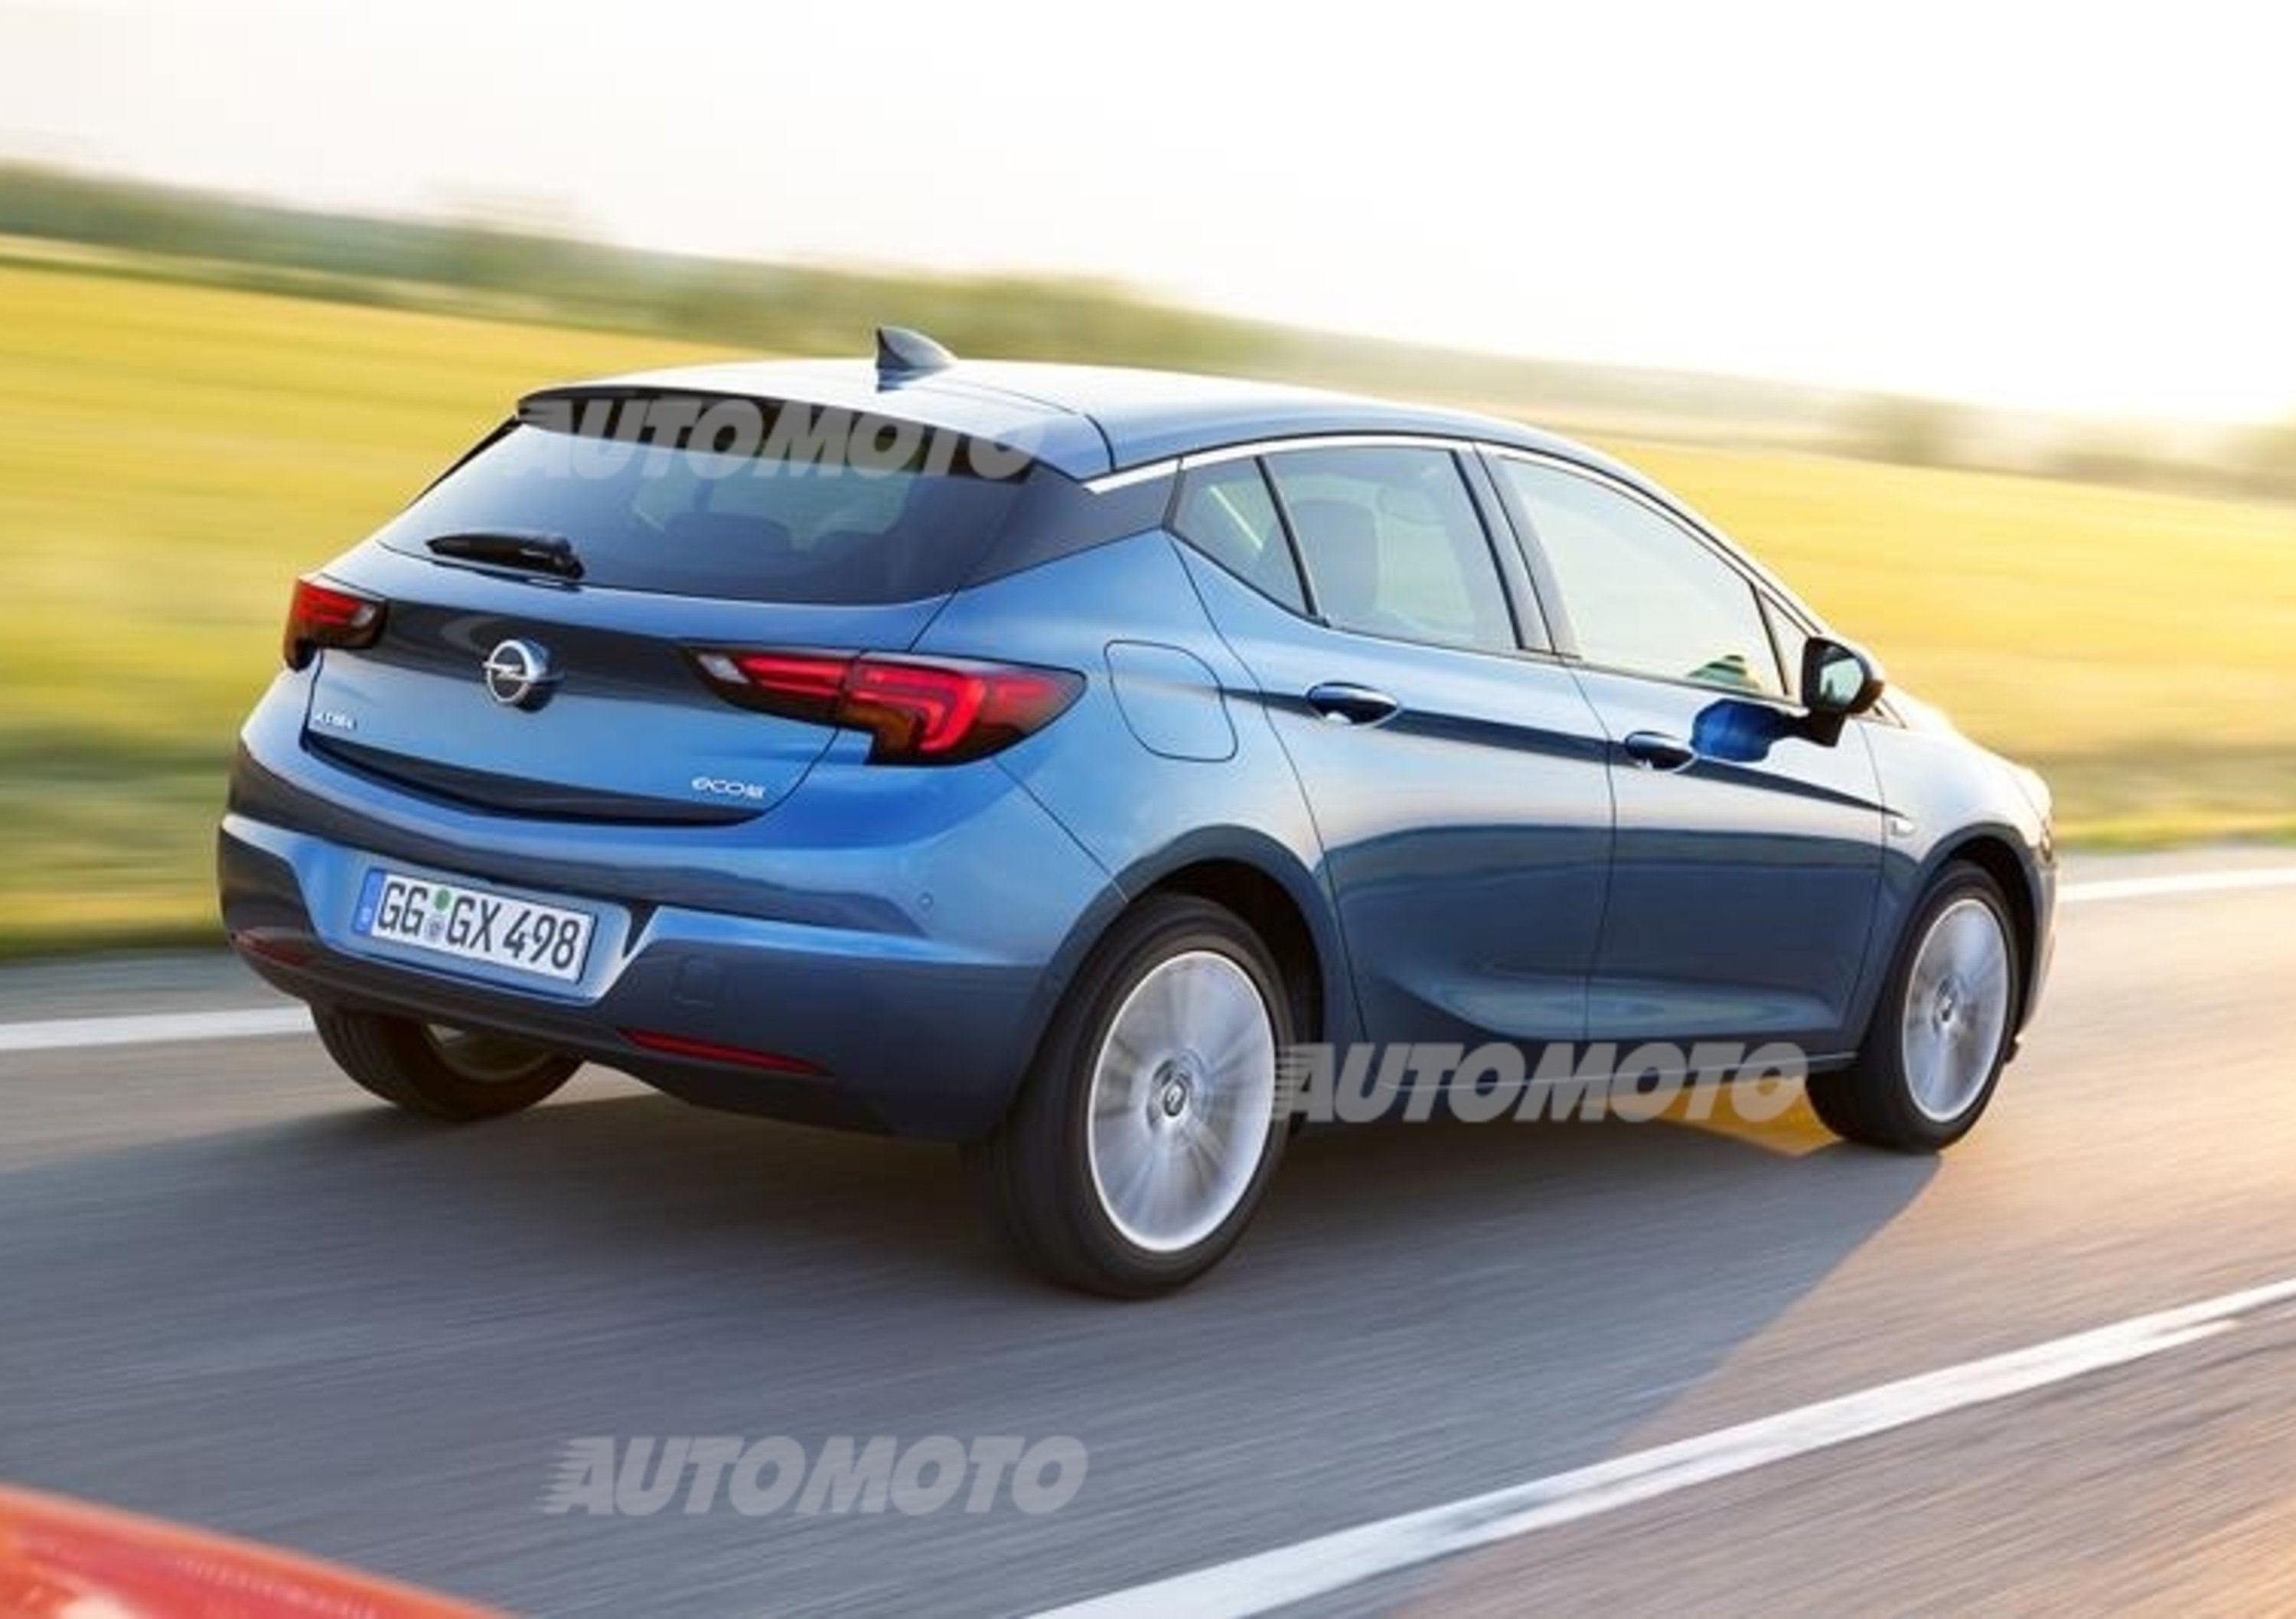 Franke, Opel: &laquo;Nuova Astra ha motori efficienti, puliti e prestazionali&raquo;